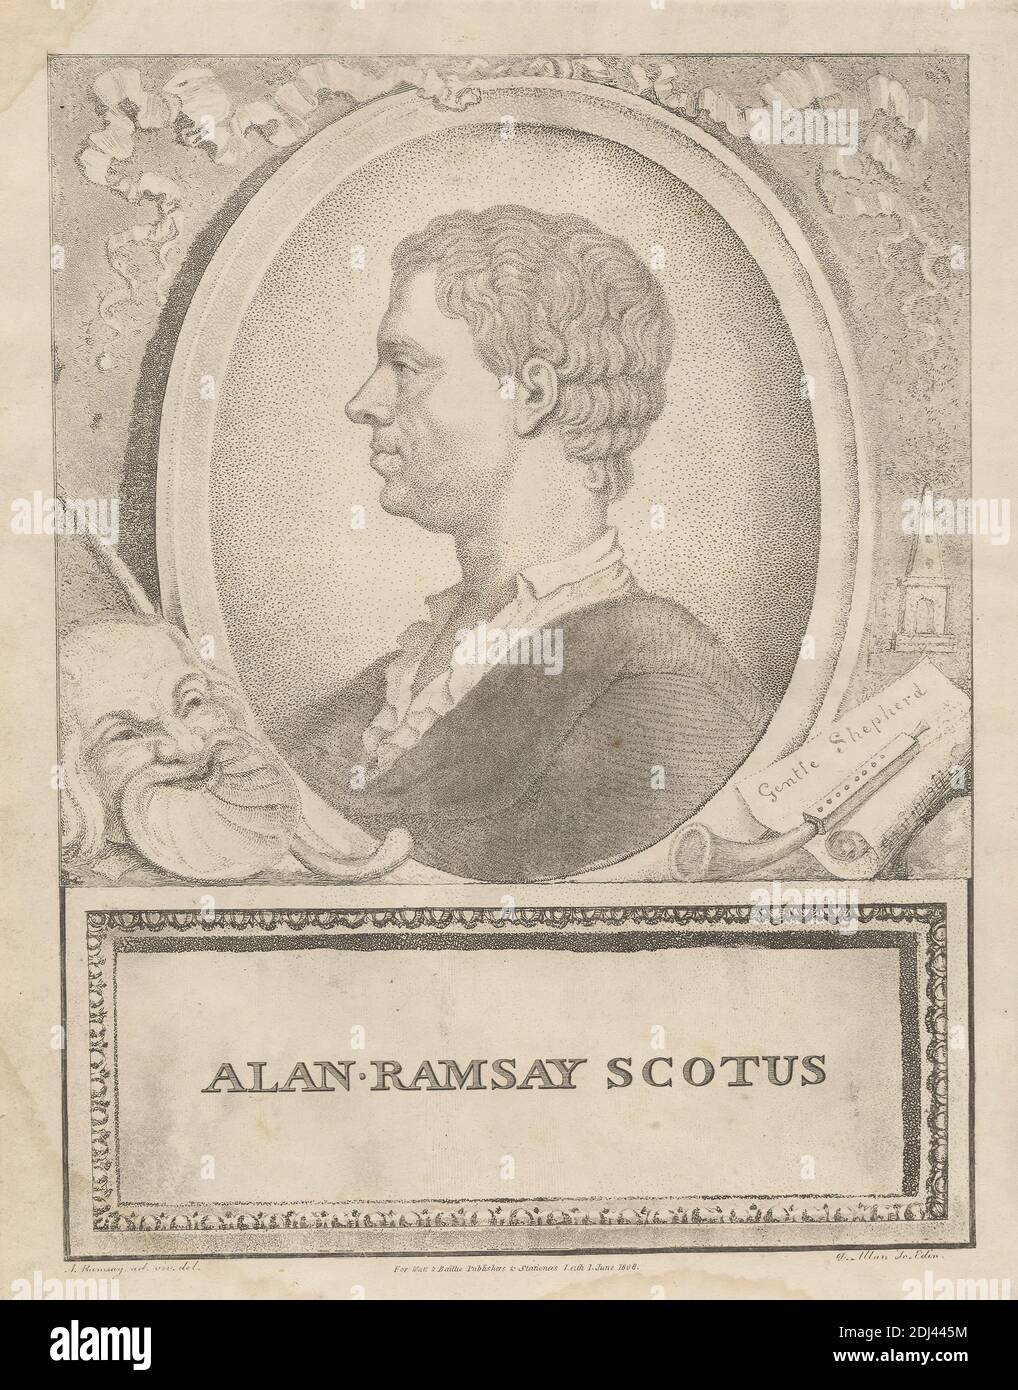 Alan Ramsay Scotus, imprimé par David Allan, 1744–1796, britannique, né en Écosse, d'après Allan Ramsay, 1686–1758, britannique, publié par Watt & Baillie, active 1808, britannique, 1808, Aquatint, gravure à l'aide de crépons et gravure sur papier vélin crème modérément épais, légèrement texturé, feuille : 11 1/8 x 8 7/8 pouces (28.3 x 22.5 cm), plaque : 10 1/16 x 7 13/16 pouces (25.6 x 19.9 cm) et image : 9 1/8 x 6 15/16 pouces (23.2 x 17.6 cm), buste, col, cadre (ameublement), frontispice (illustration), cornes, illustration, homme, masque, poème, portrait, profil, rubans, rouleau (motif), autoportrait, feuille Banque D'Images